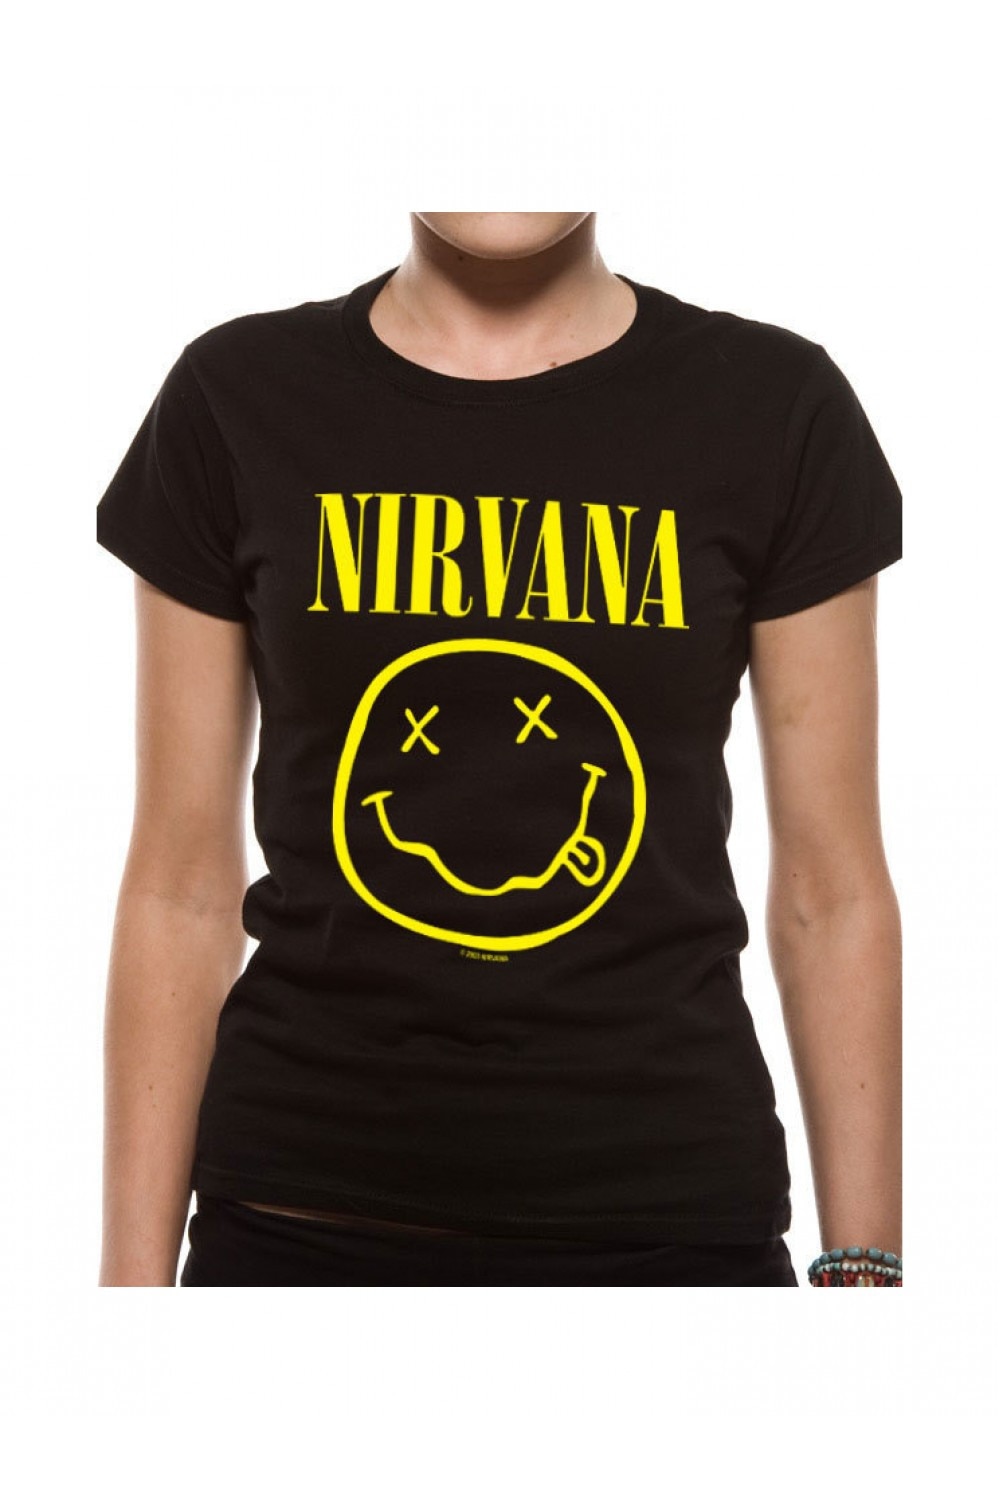 Футболка Nirvana. Футболка i Nirvana Bershka. Нирвана футболка оригинал. Женская футболка Nirvana. Nirvana t